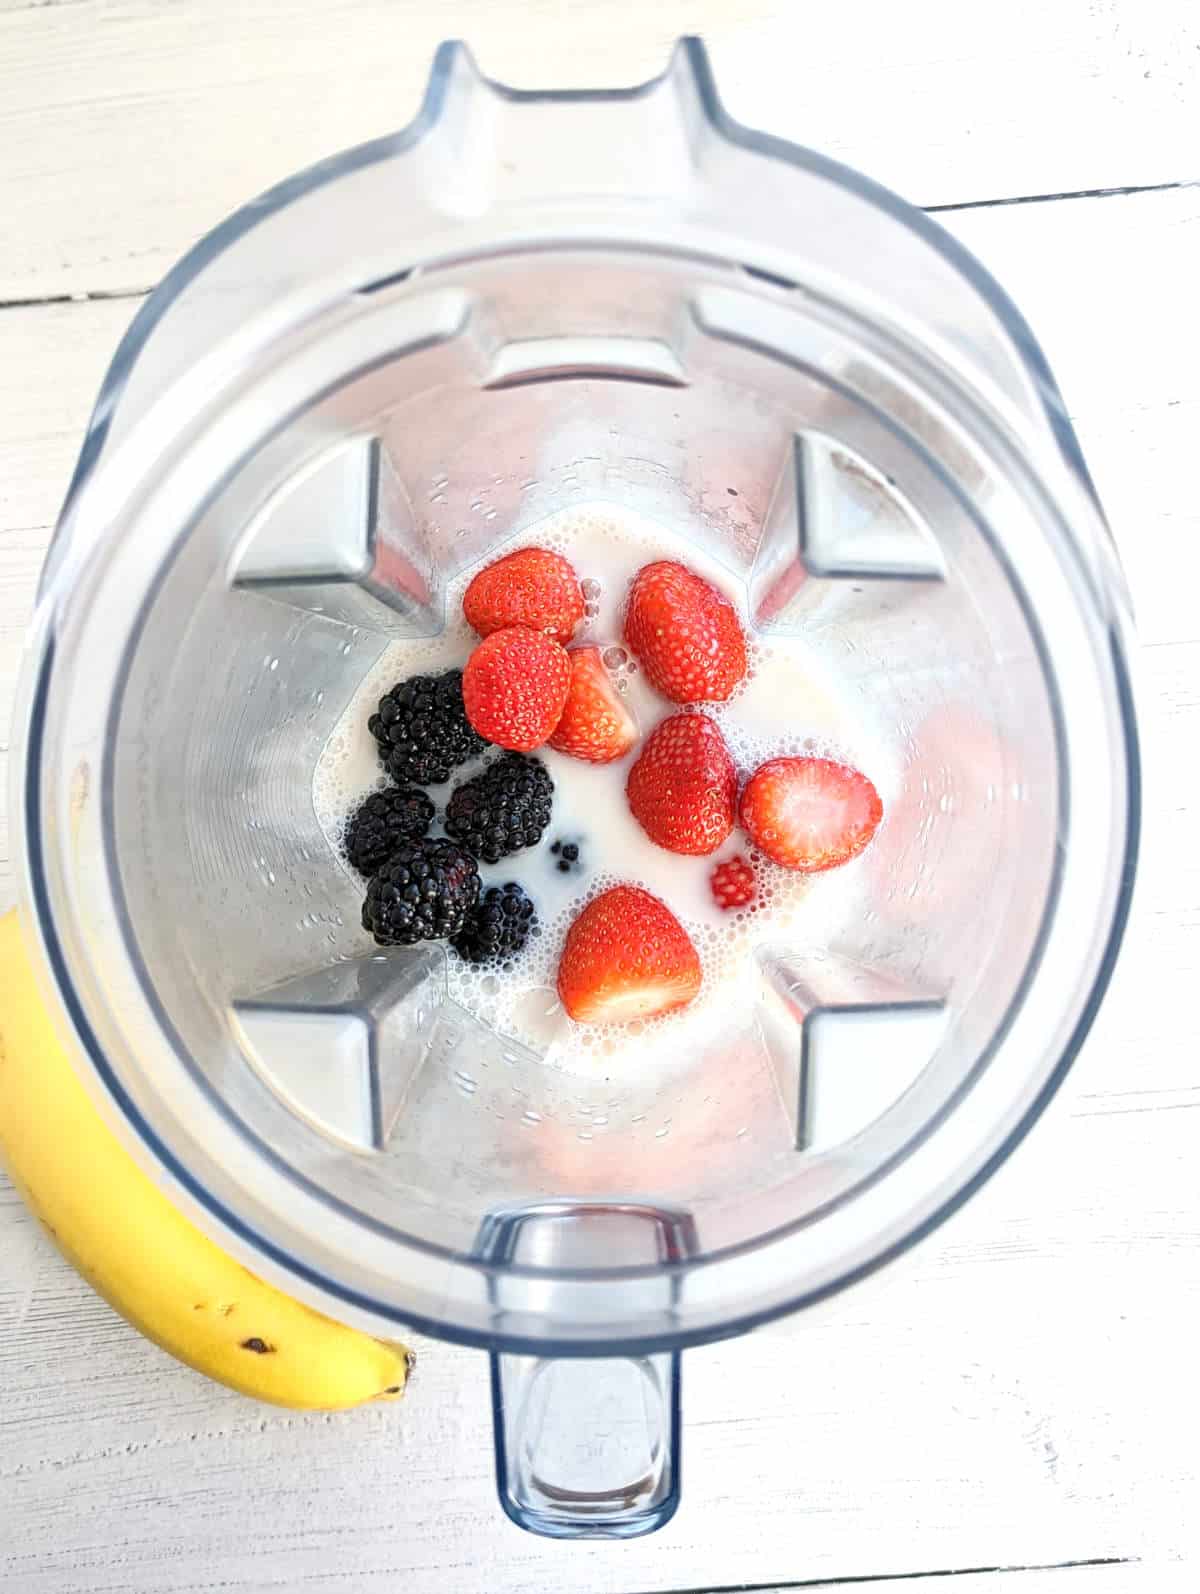 Milk and berries in blender.